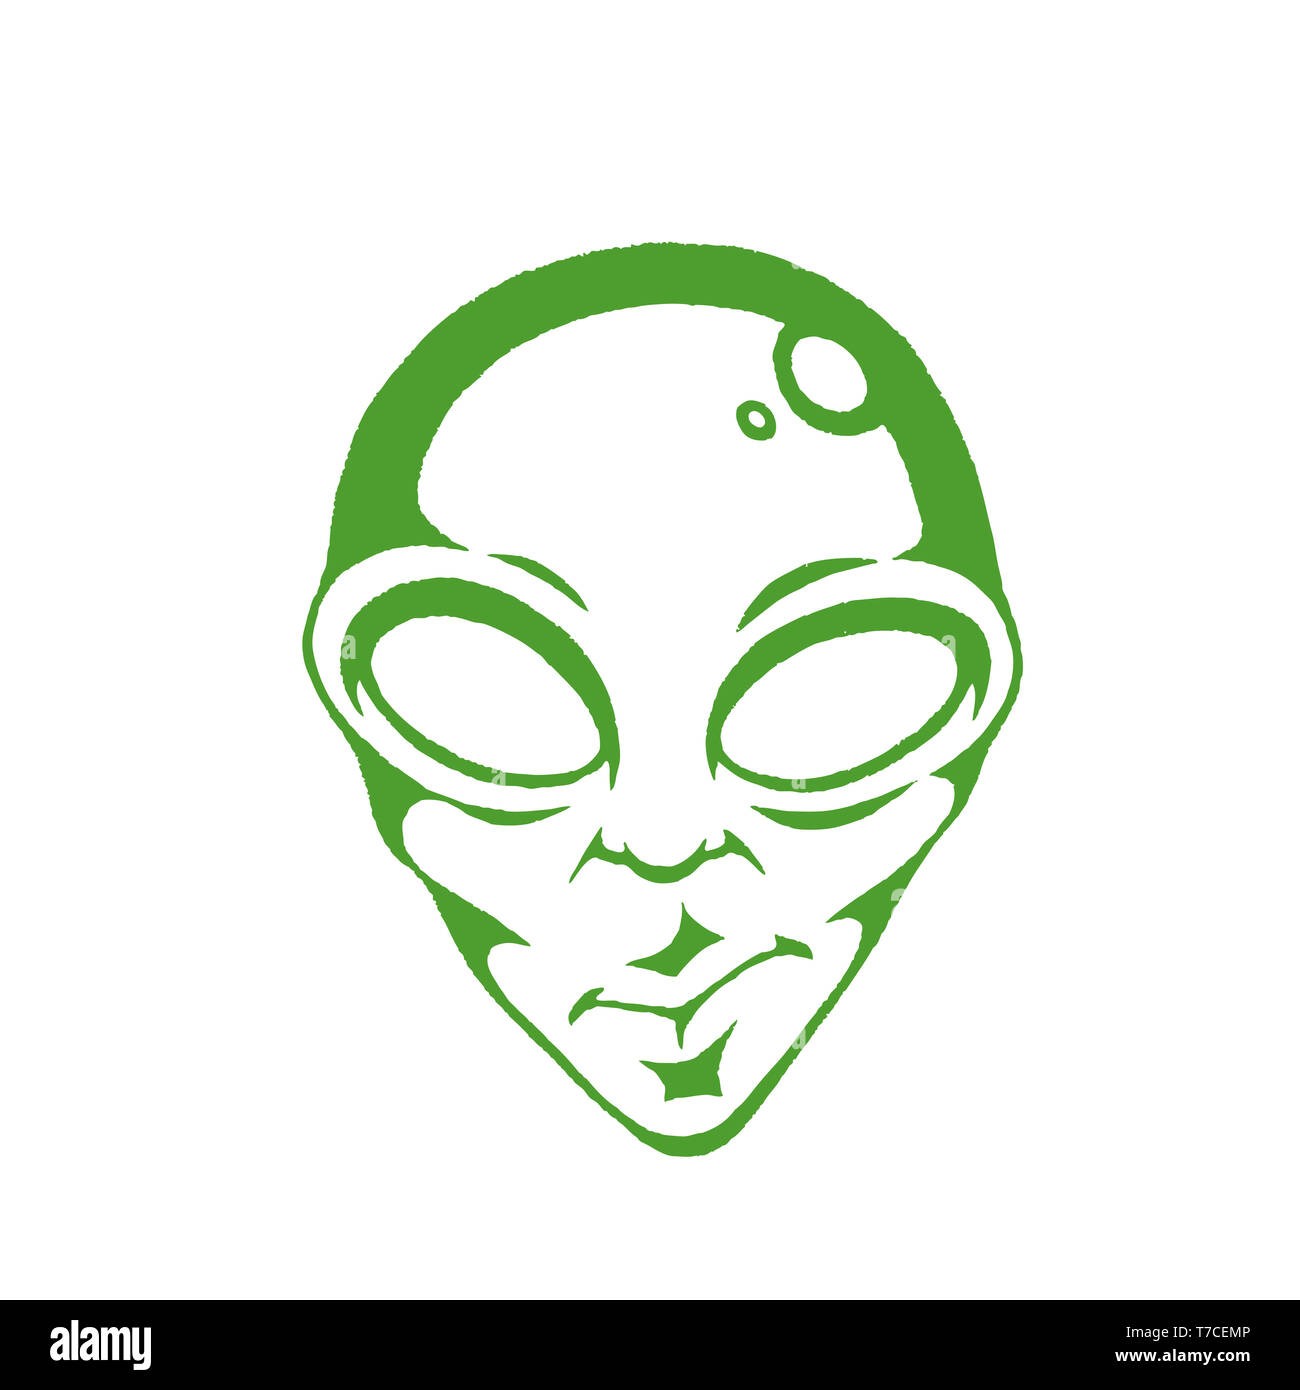 Illustrazione di verde vettorializzare schizzo di inchiostro di Alien Face isolato su uno sfondo bianco Foto Stock